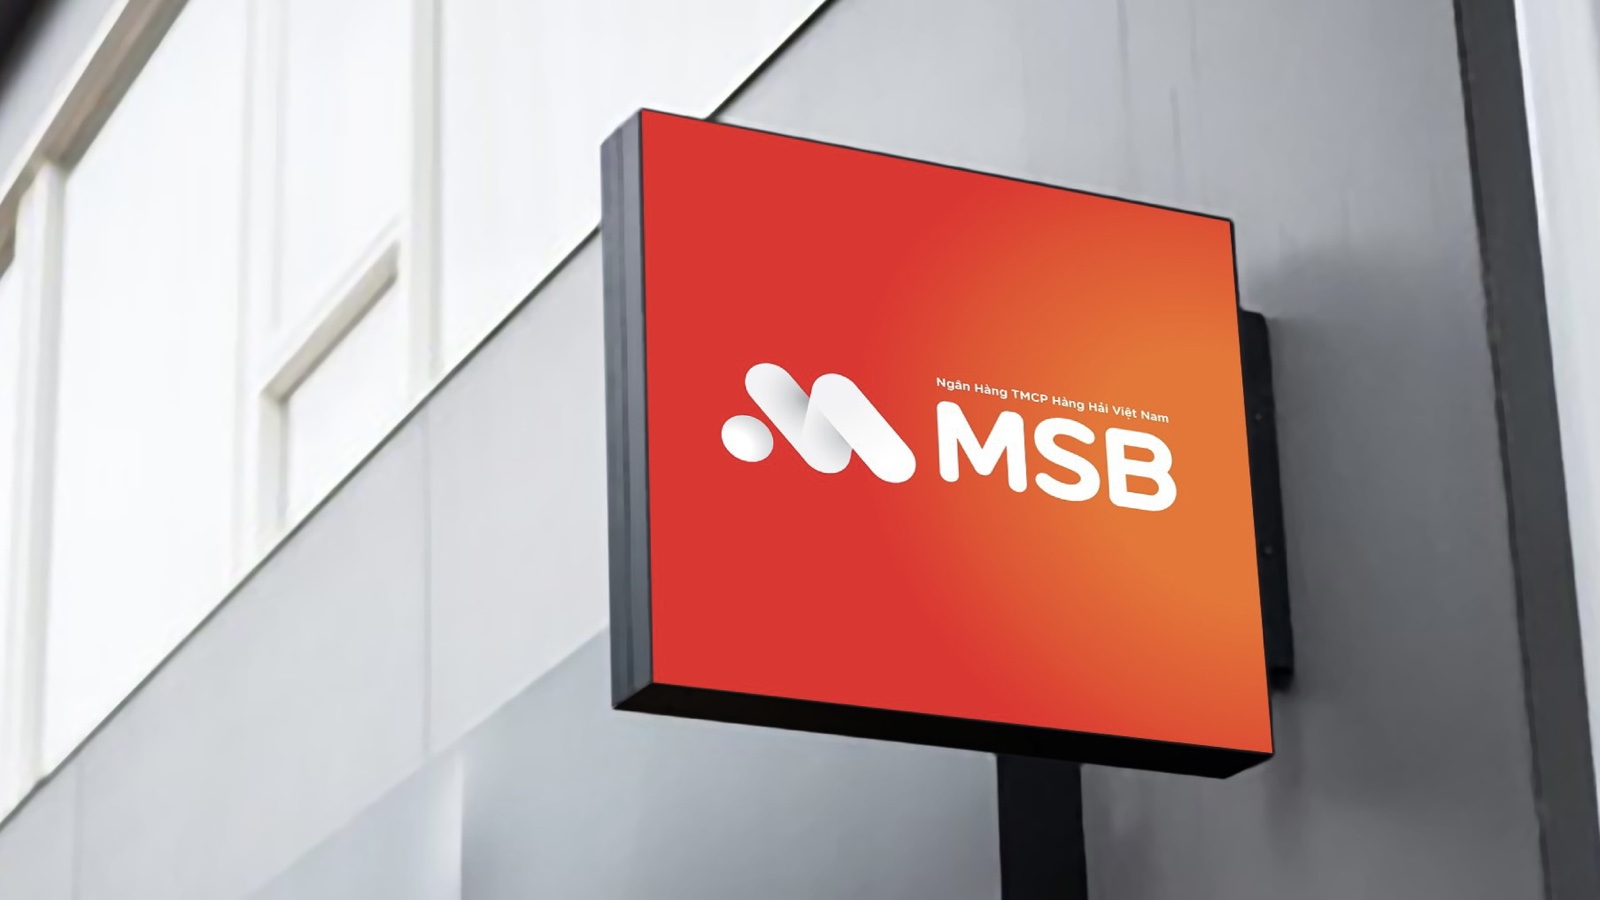 Ngân hàng MSB đứng thứ 4 tỷ lệ CASA